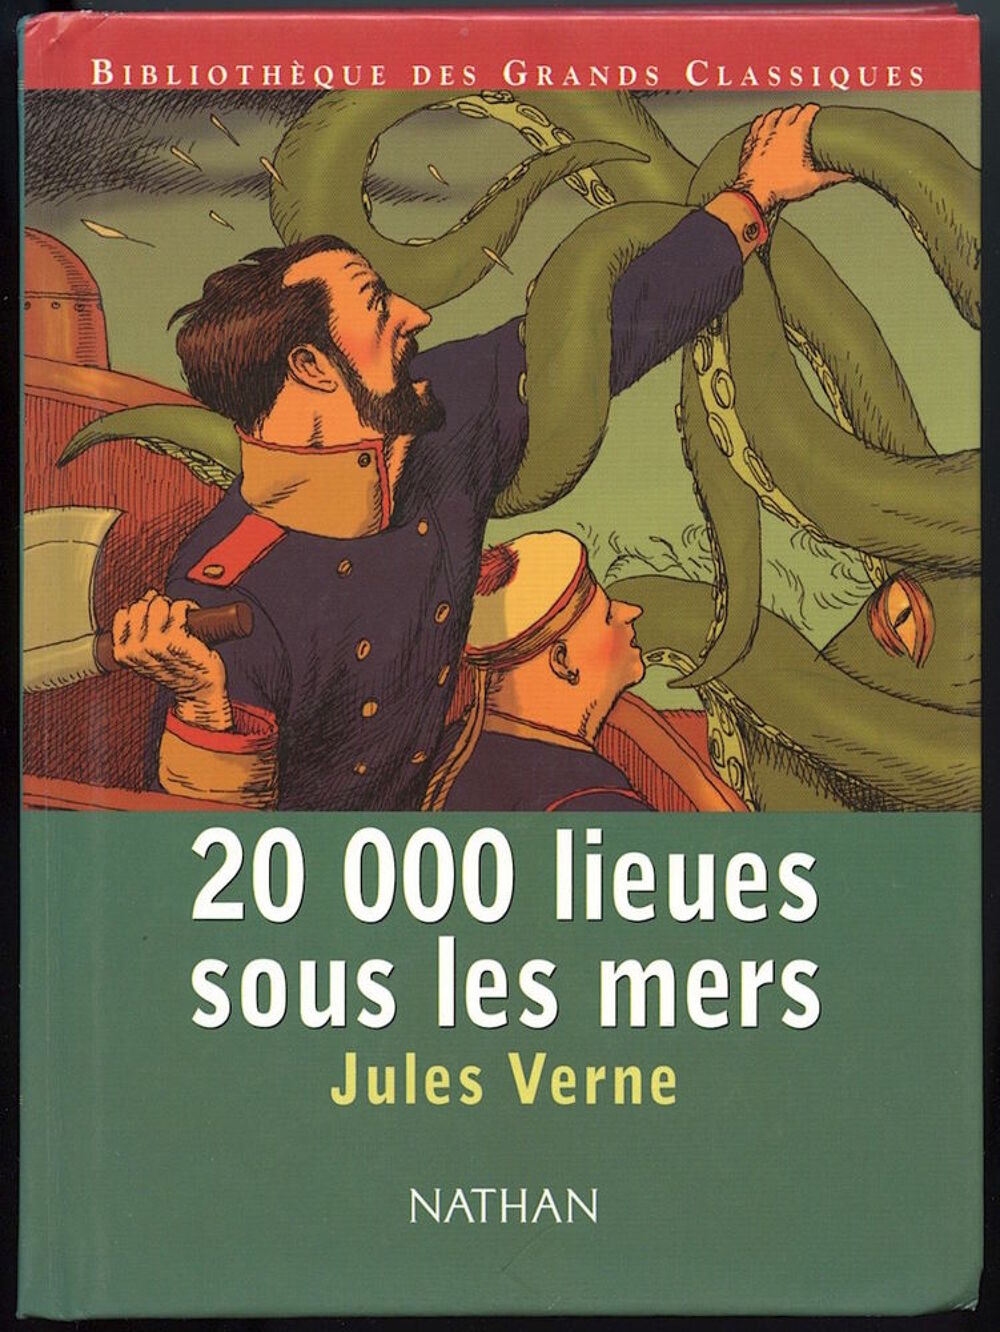 20 000 lieues sous les mers
Jules Verne
Livres et BD